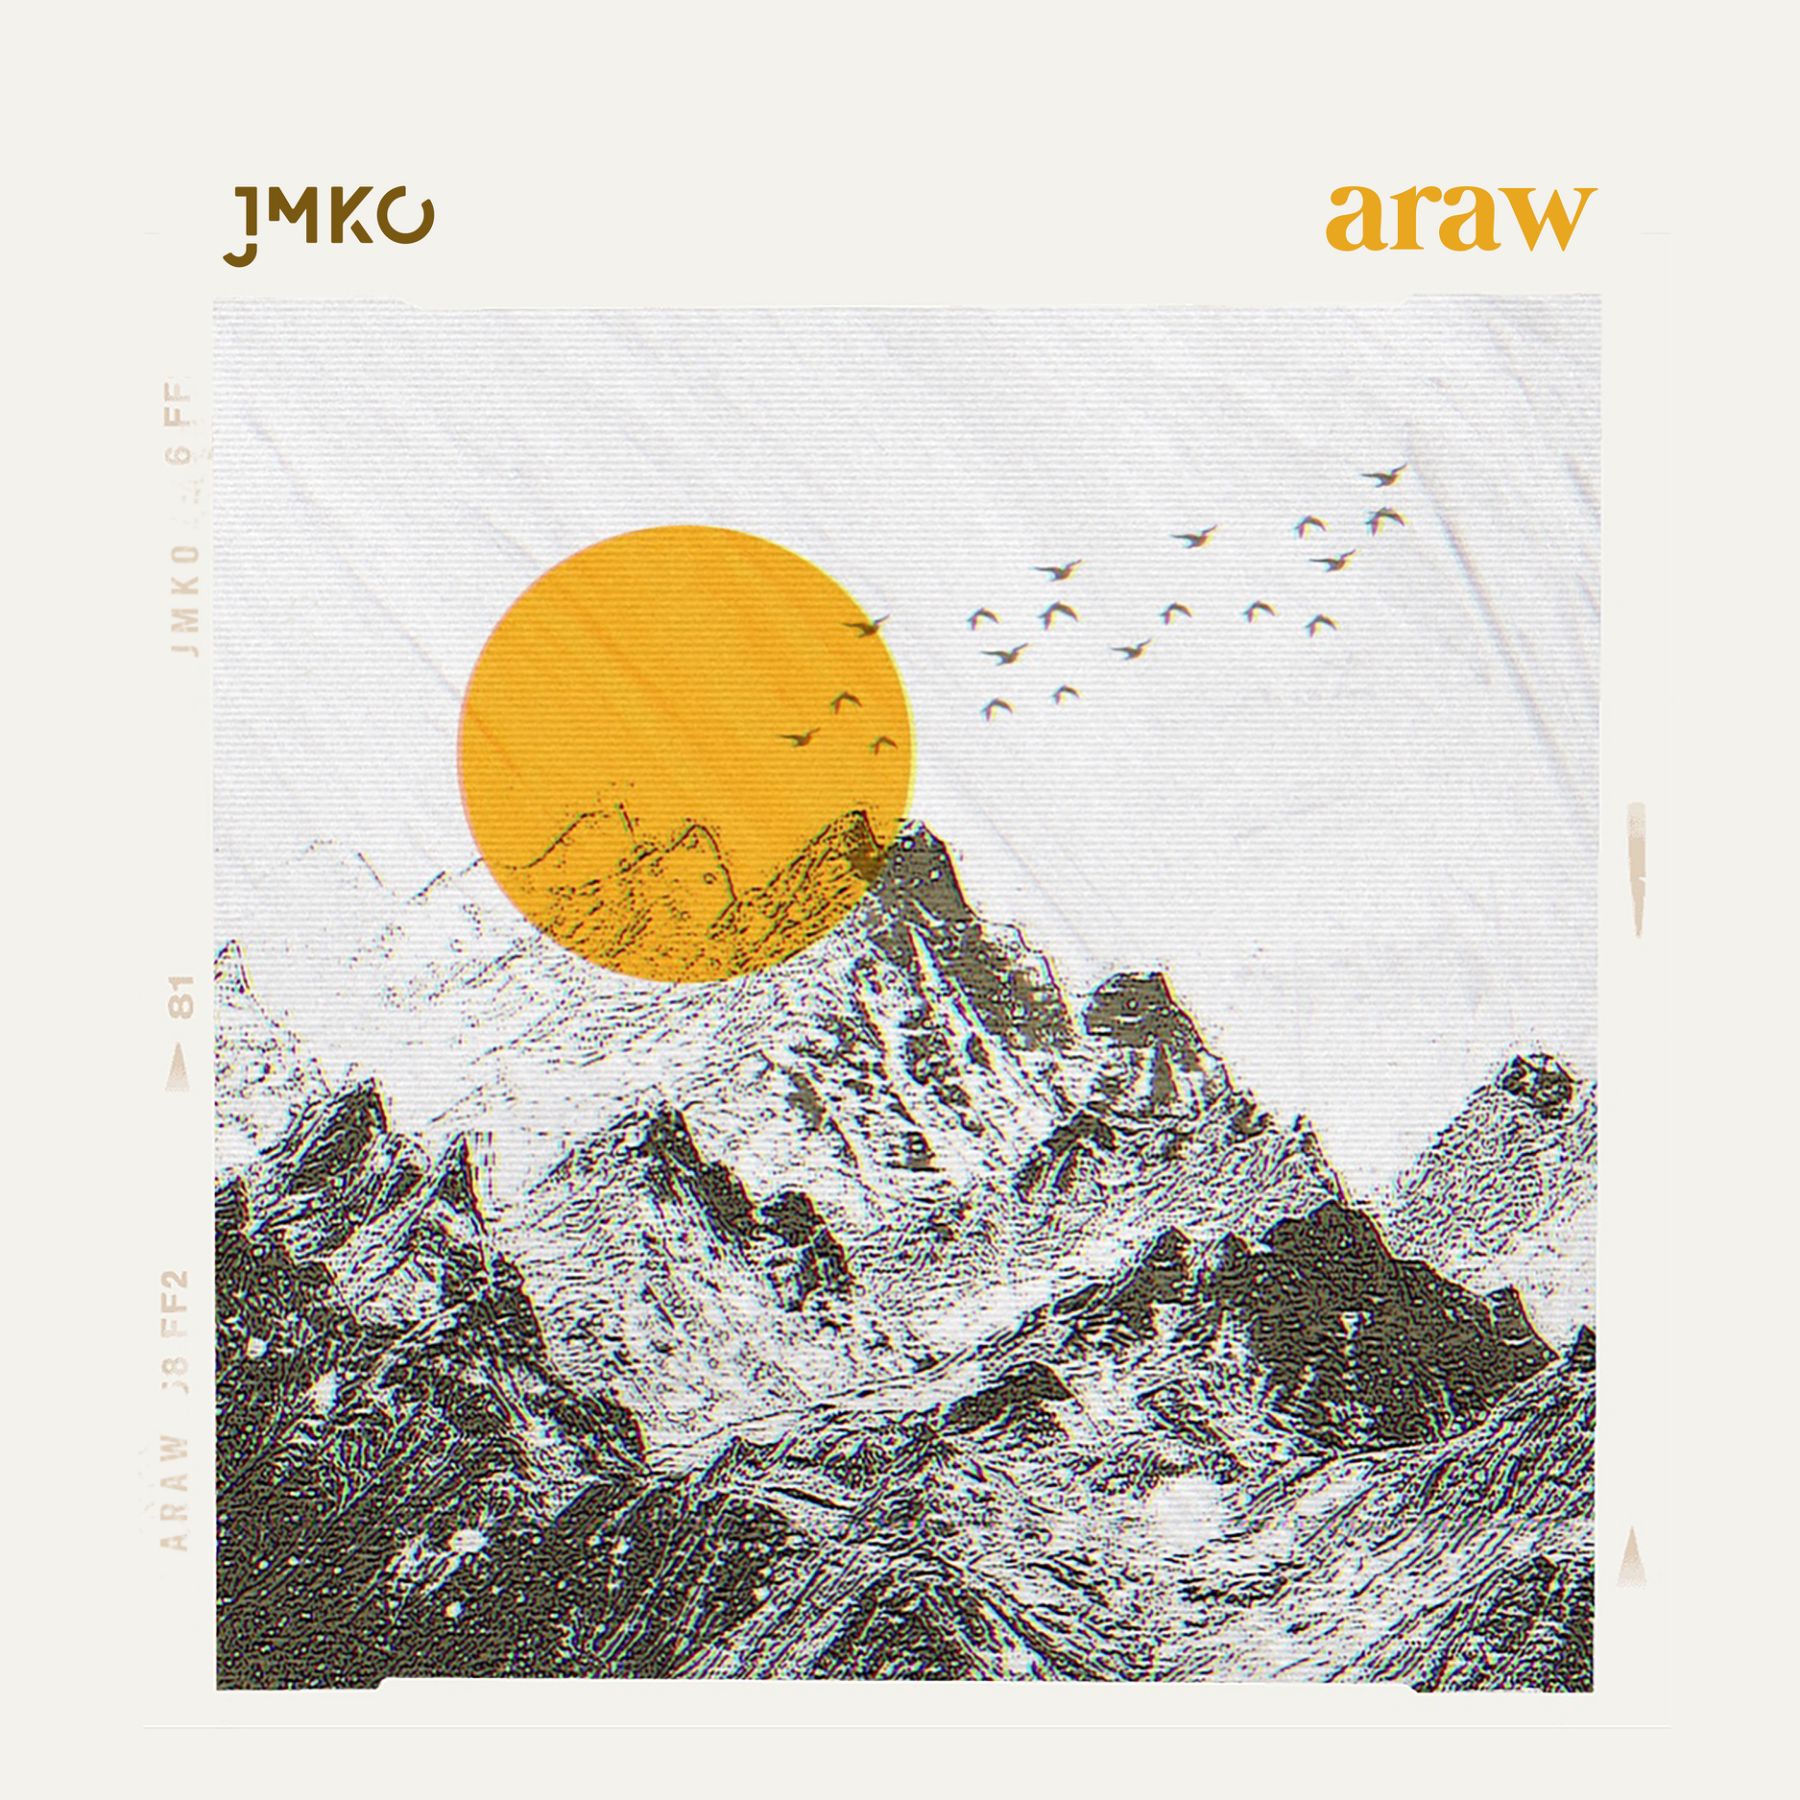 Araw by JMKO